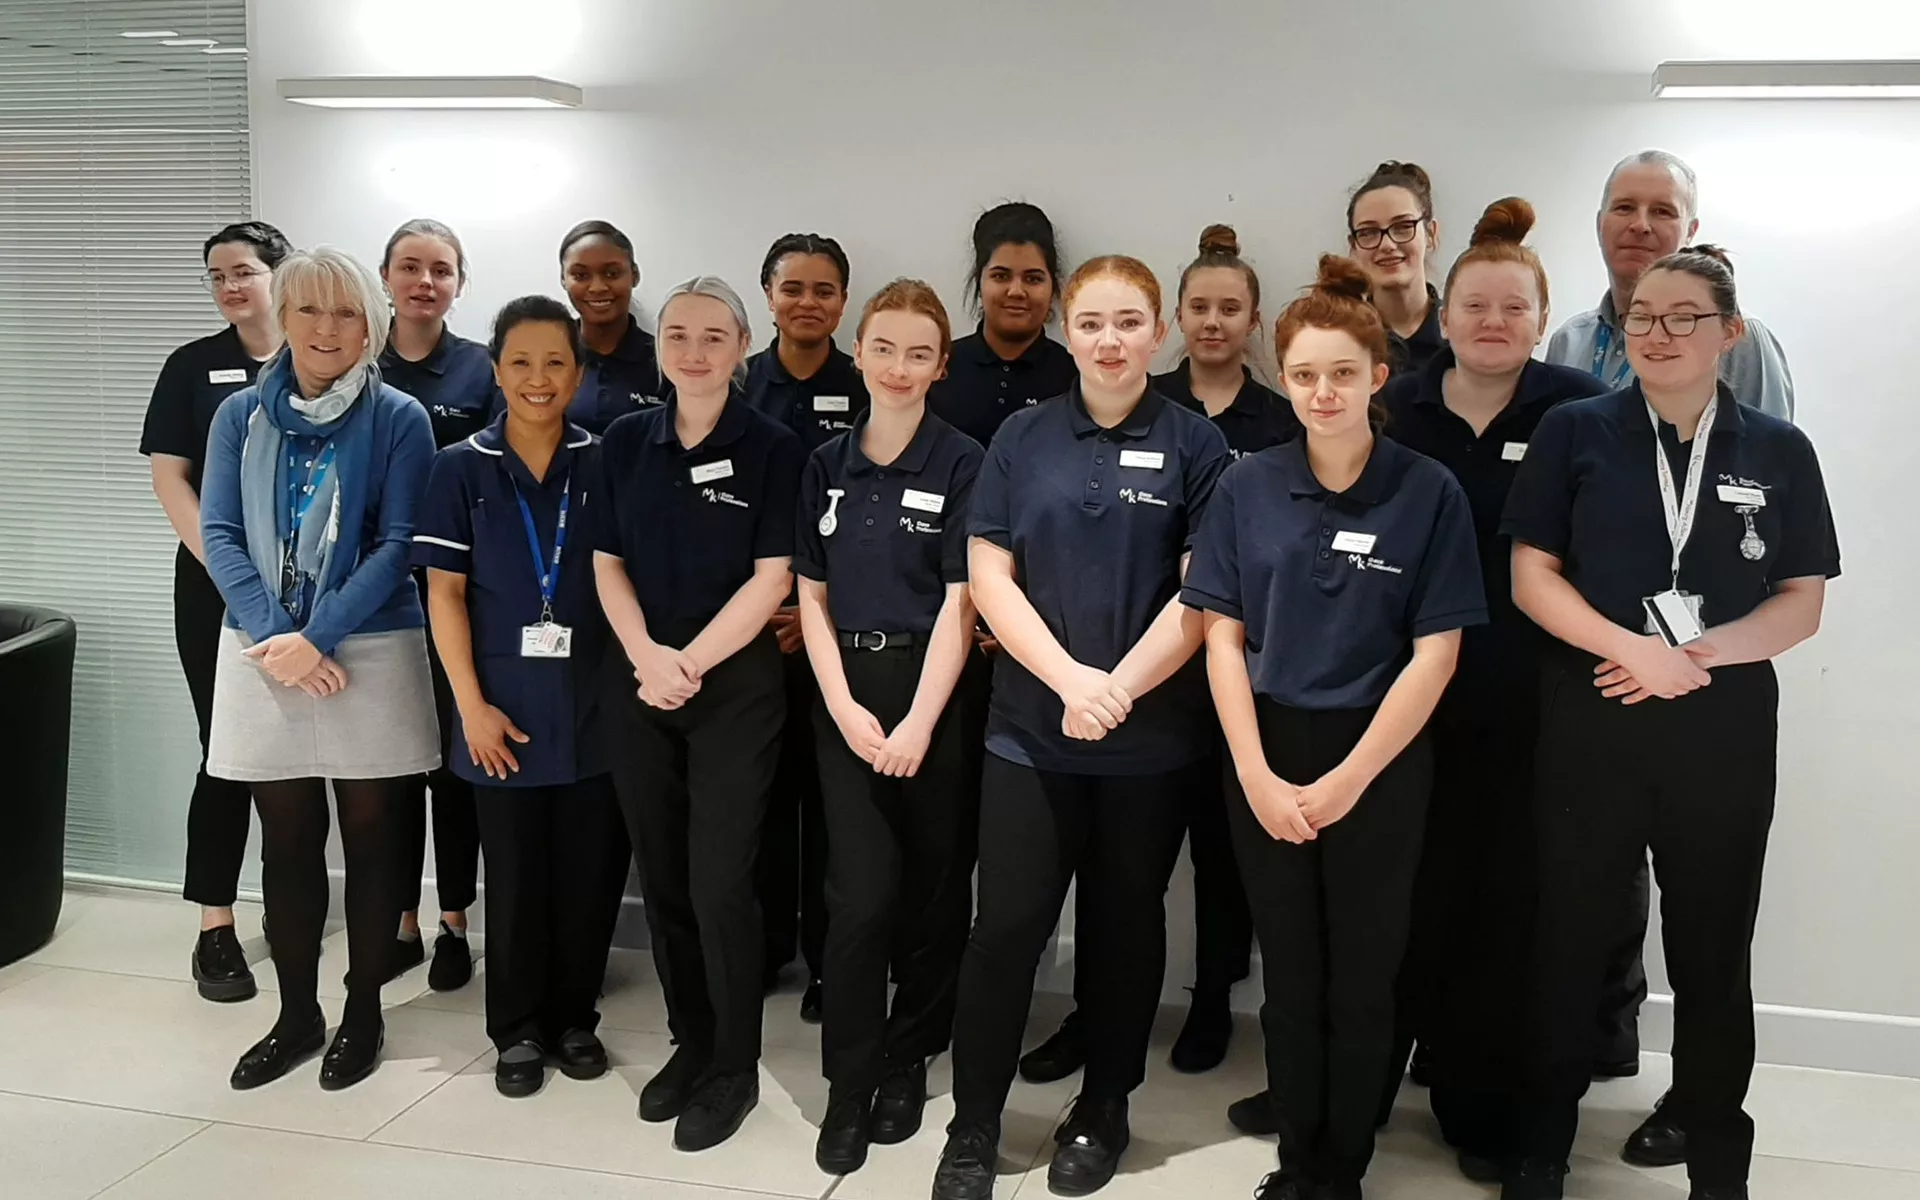 Thames Valley Nurse Cadets Shortlisted for HSJ Value Award 2021